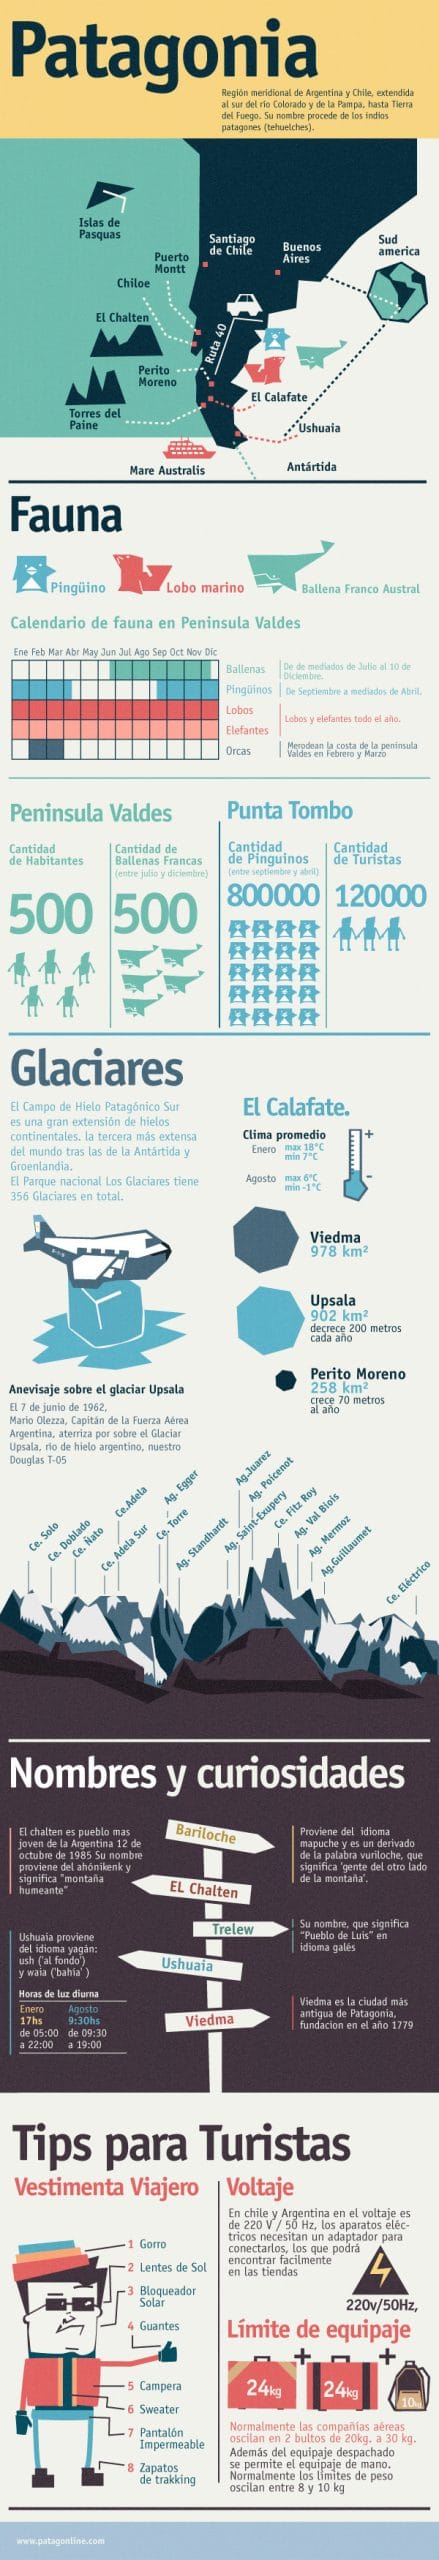 Infografía de Patagonia